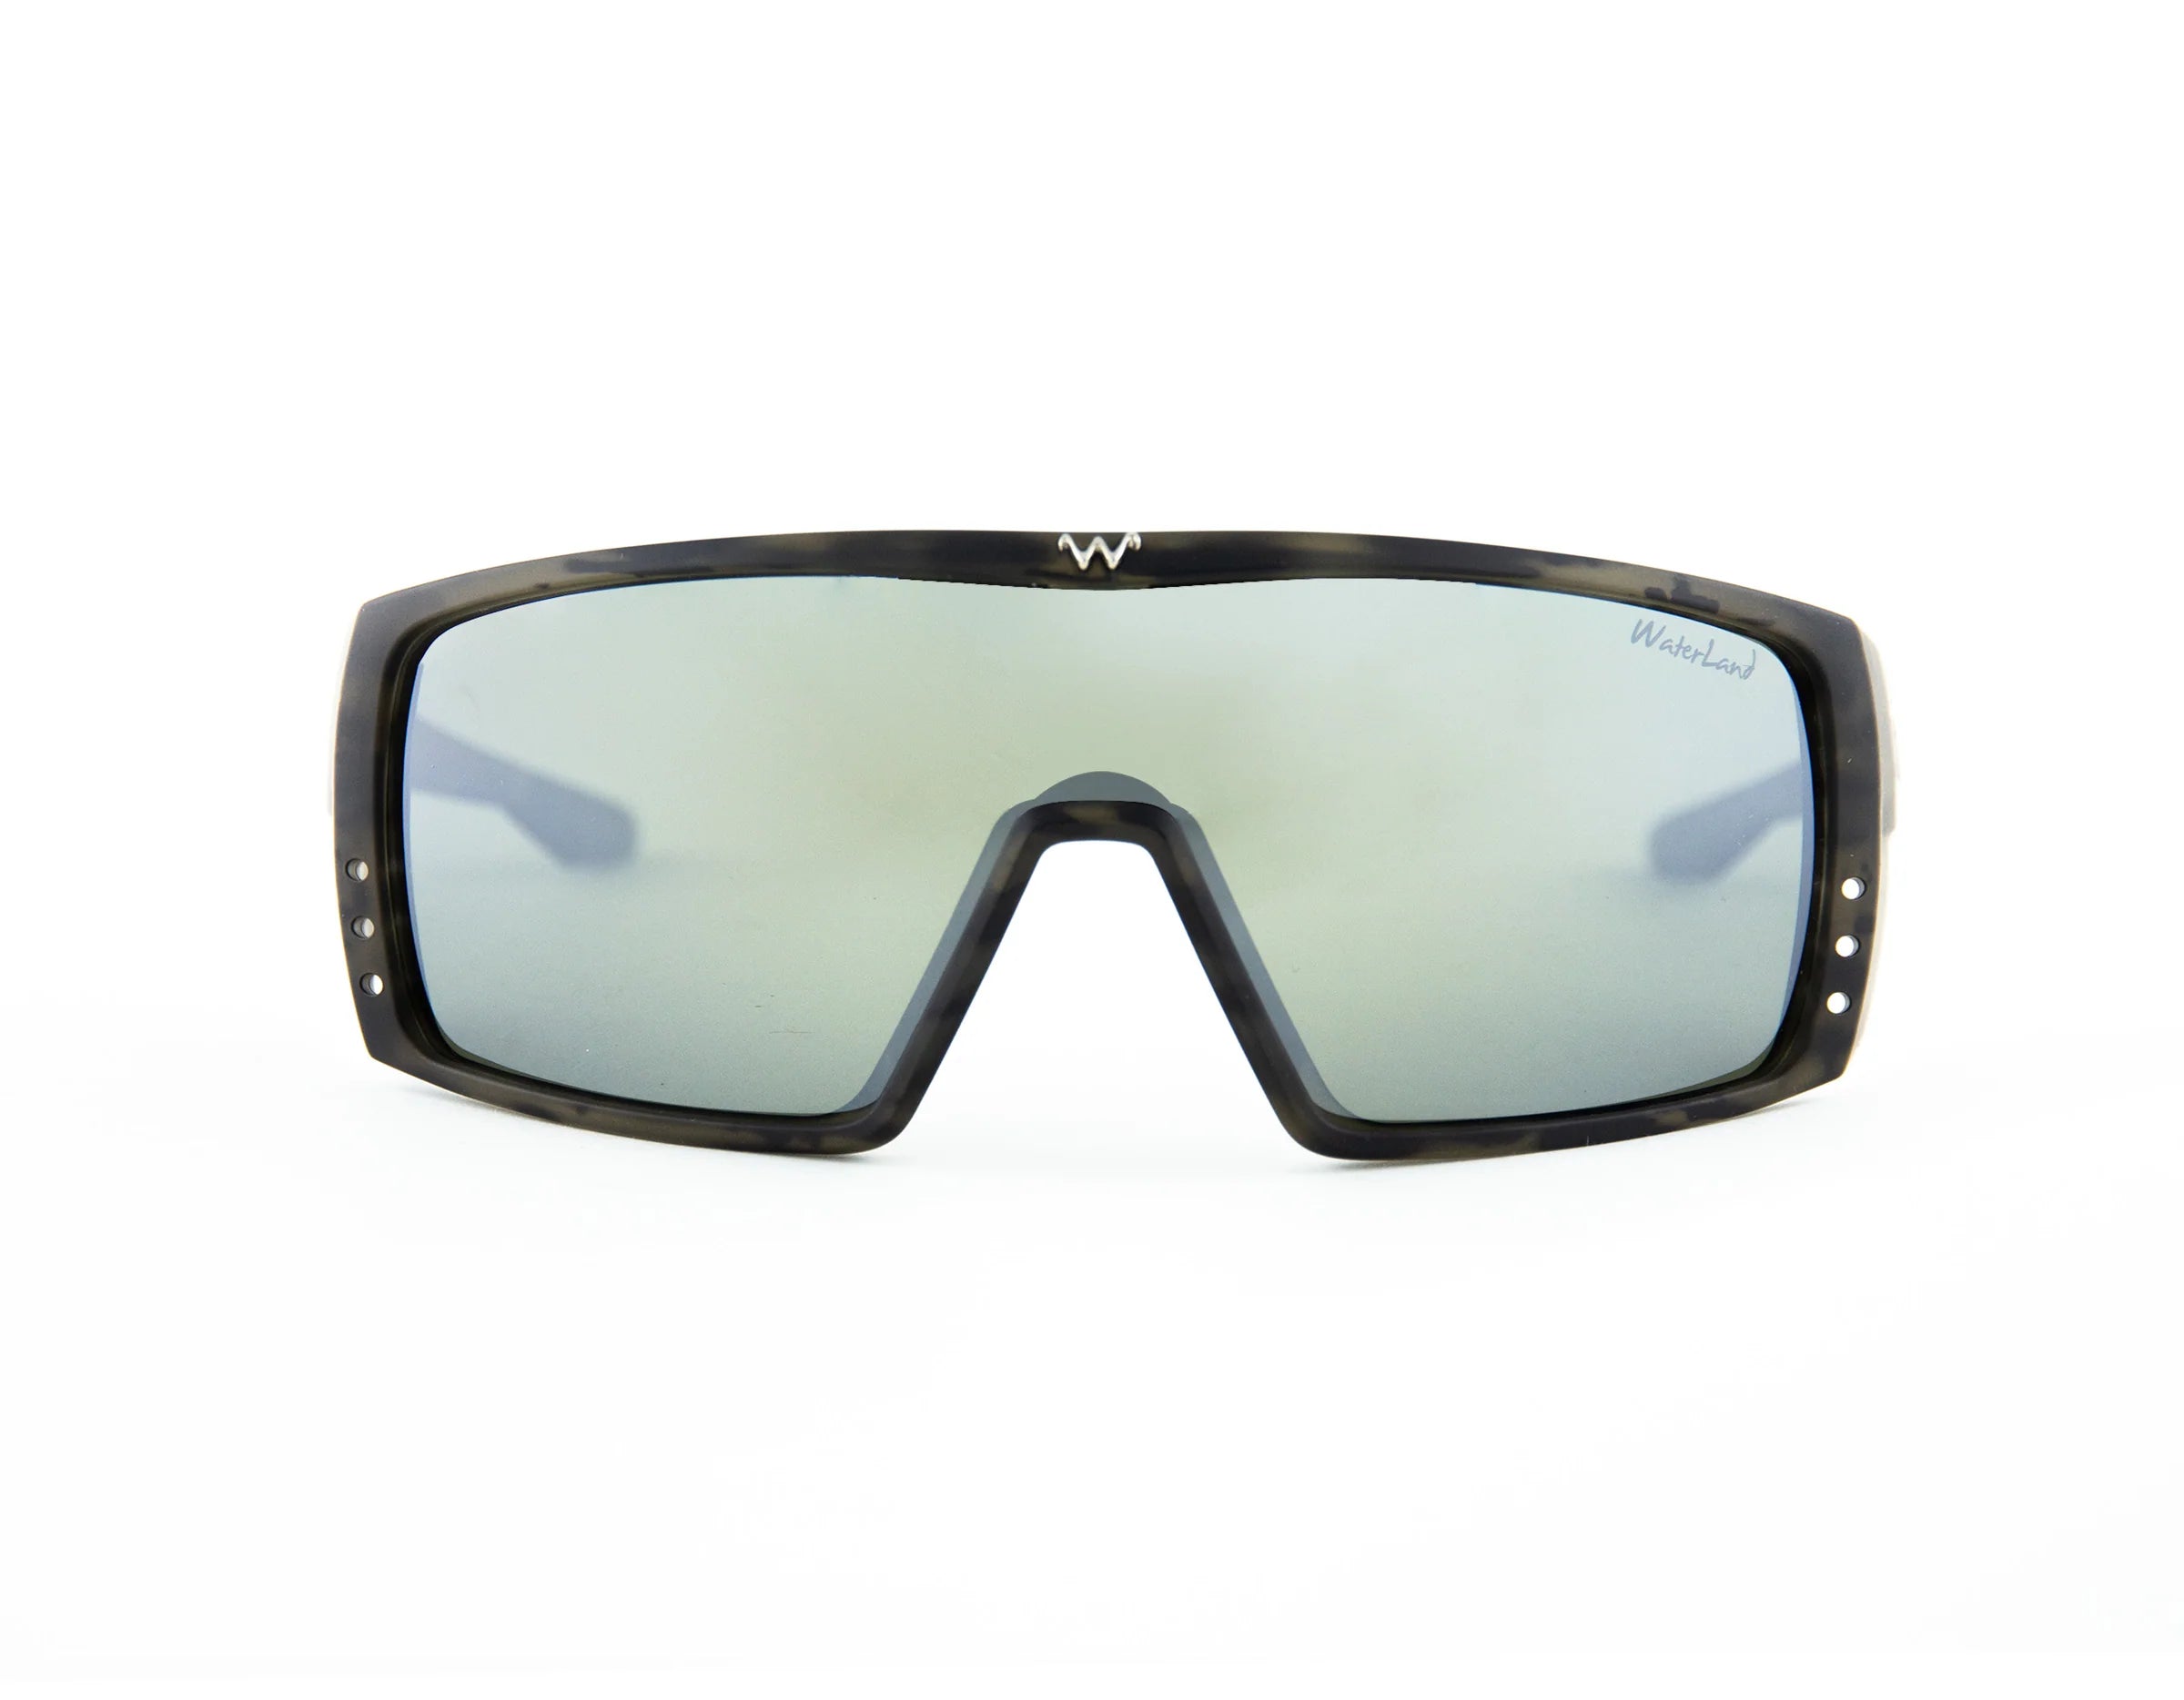 Waterland BedFisher Sunglasses